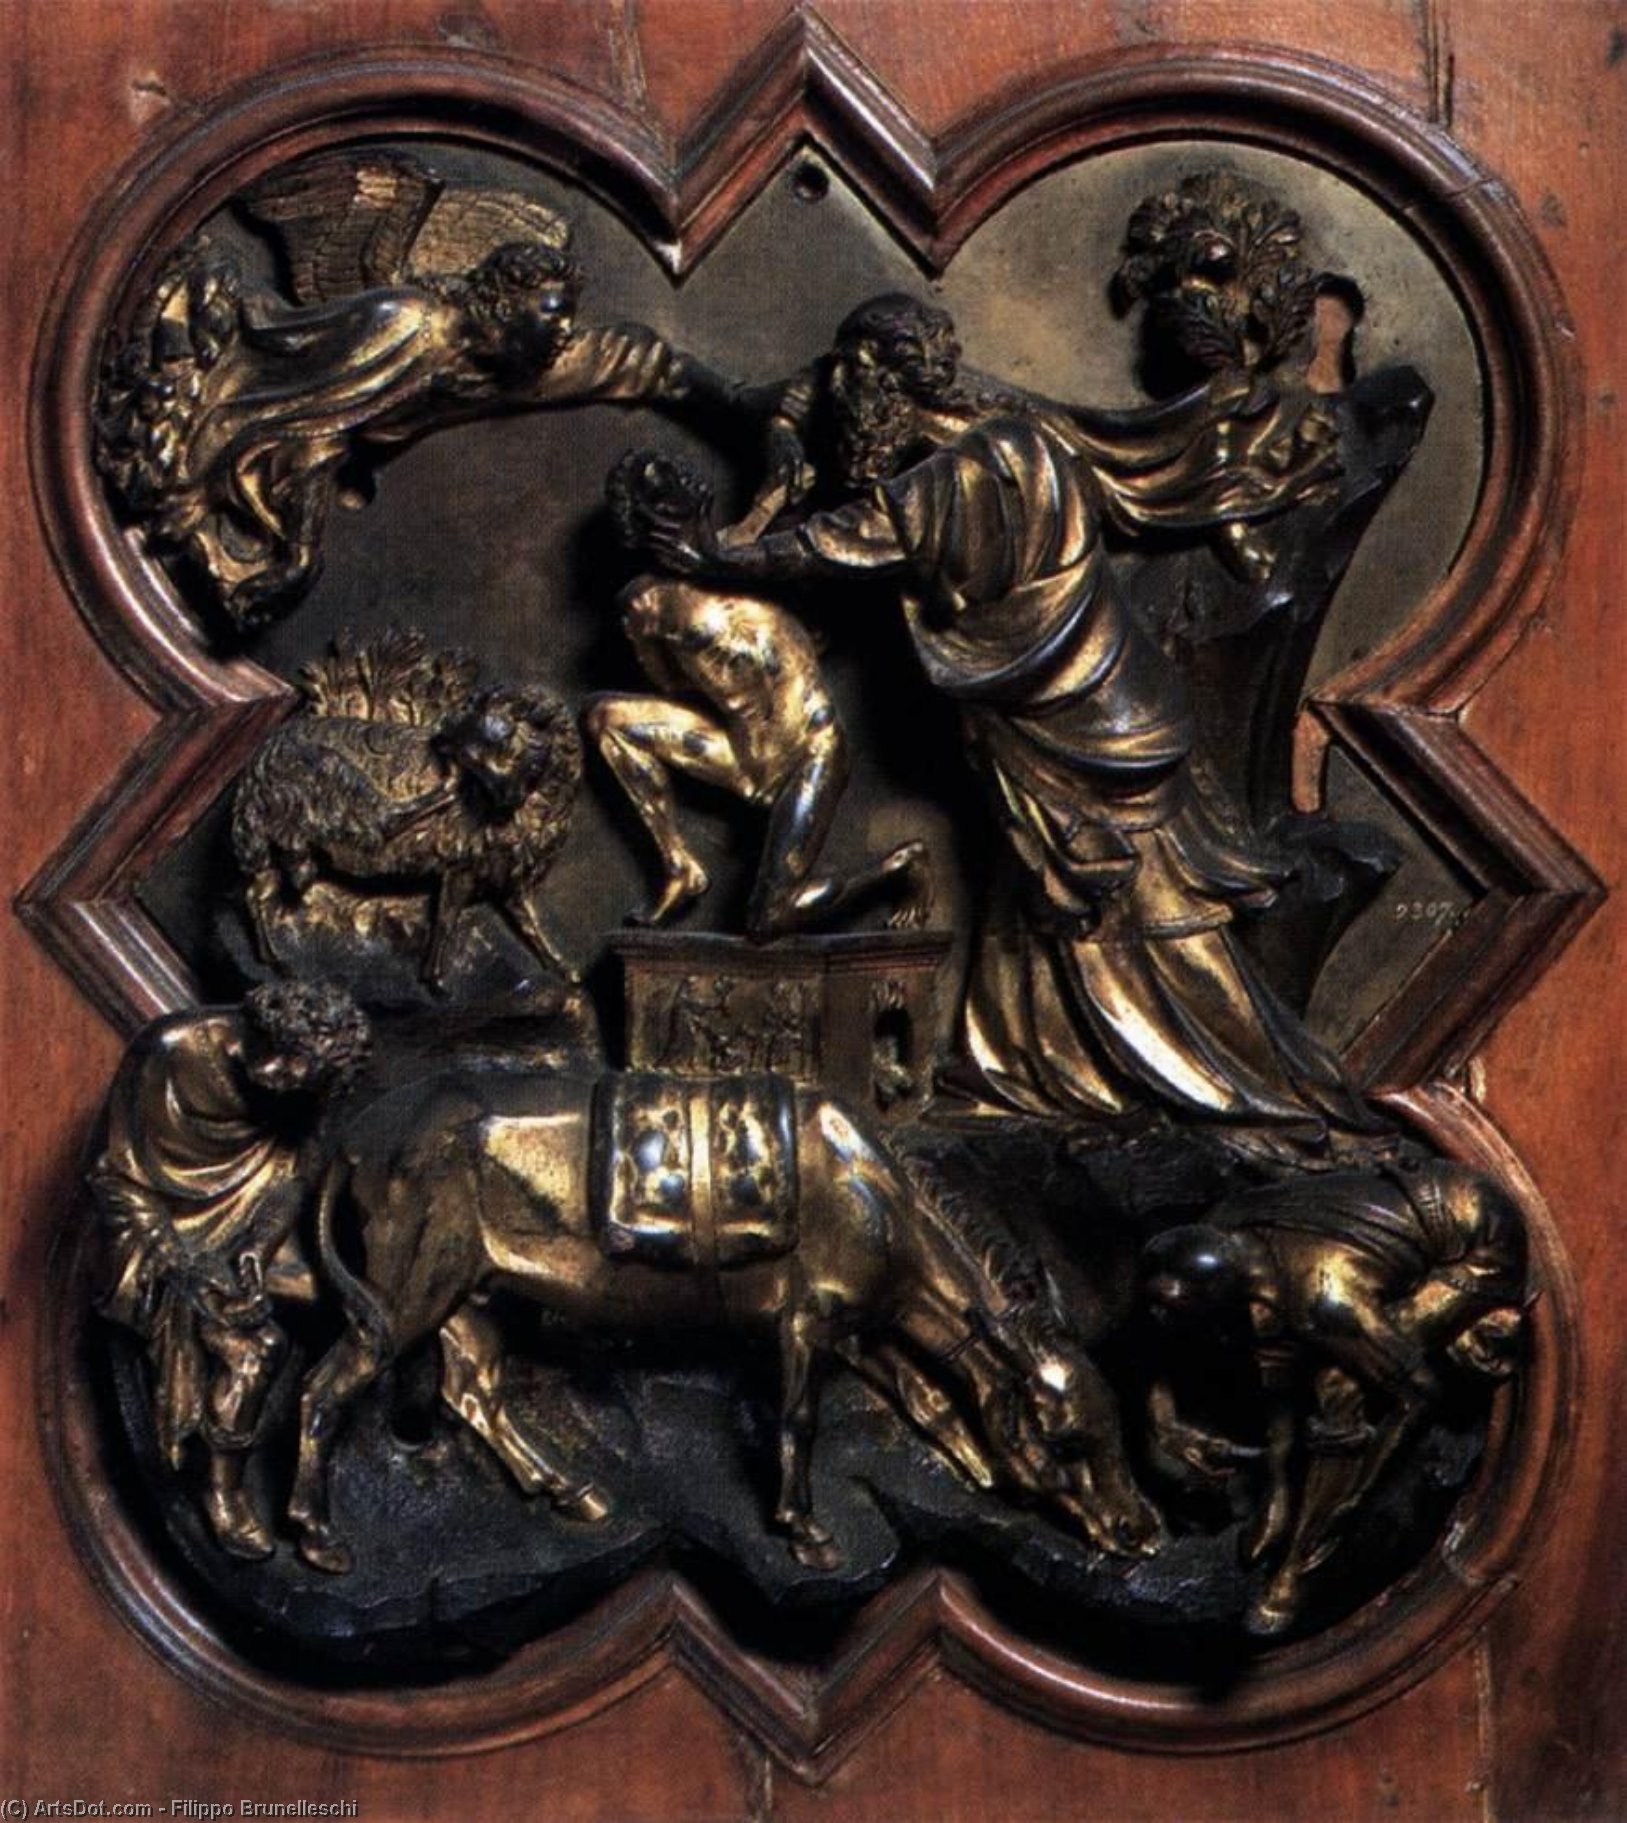 WikiOO.org - אנציקלופדיה לאמנויות יפות - ציור, יצירות אמנות Filippo Brunelleschi - Sacrifice of Isaac